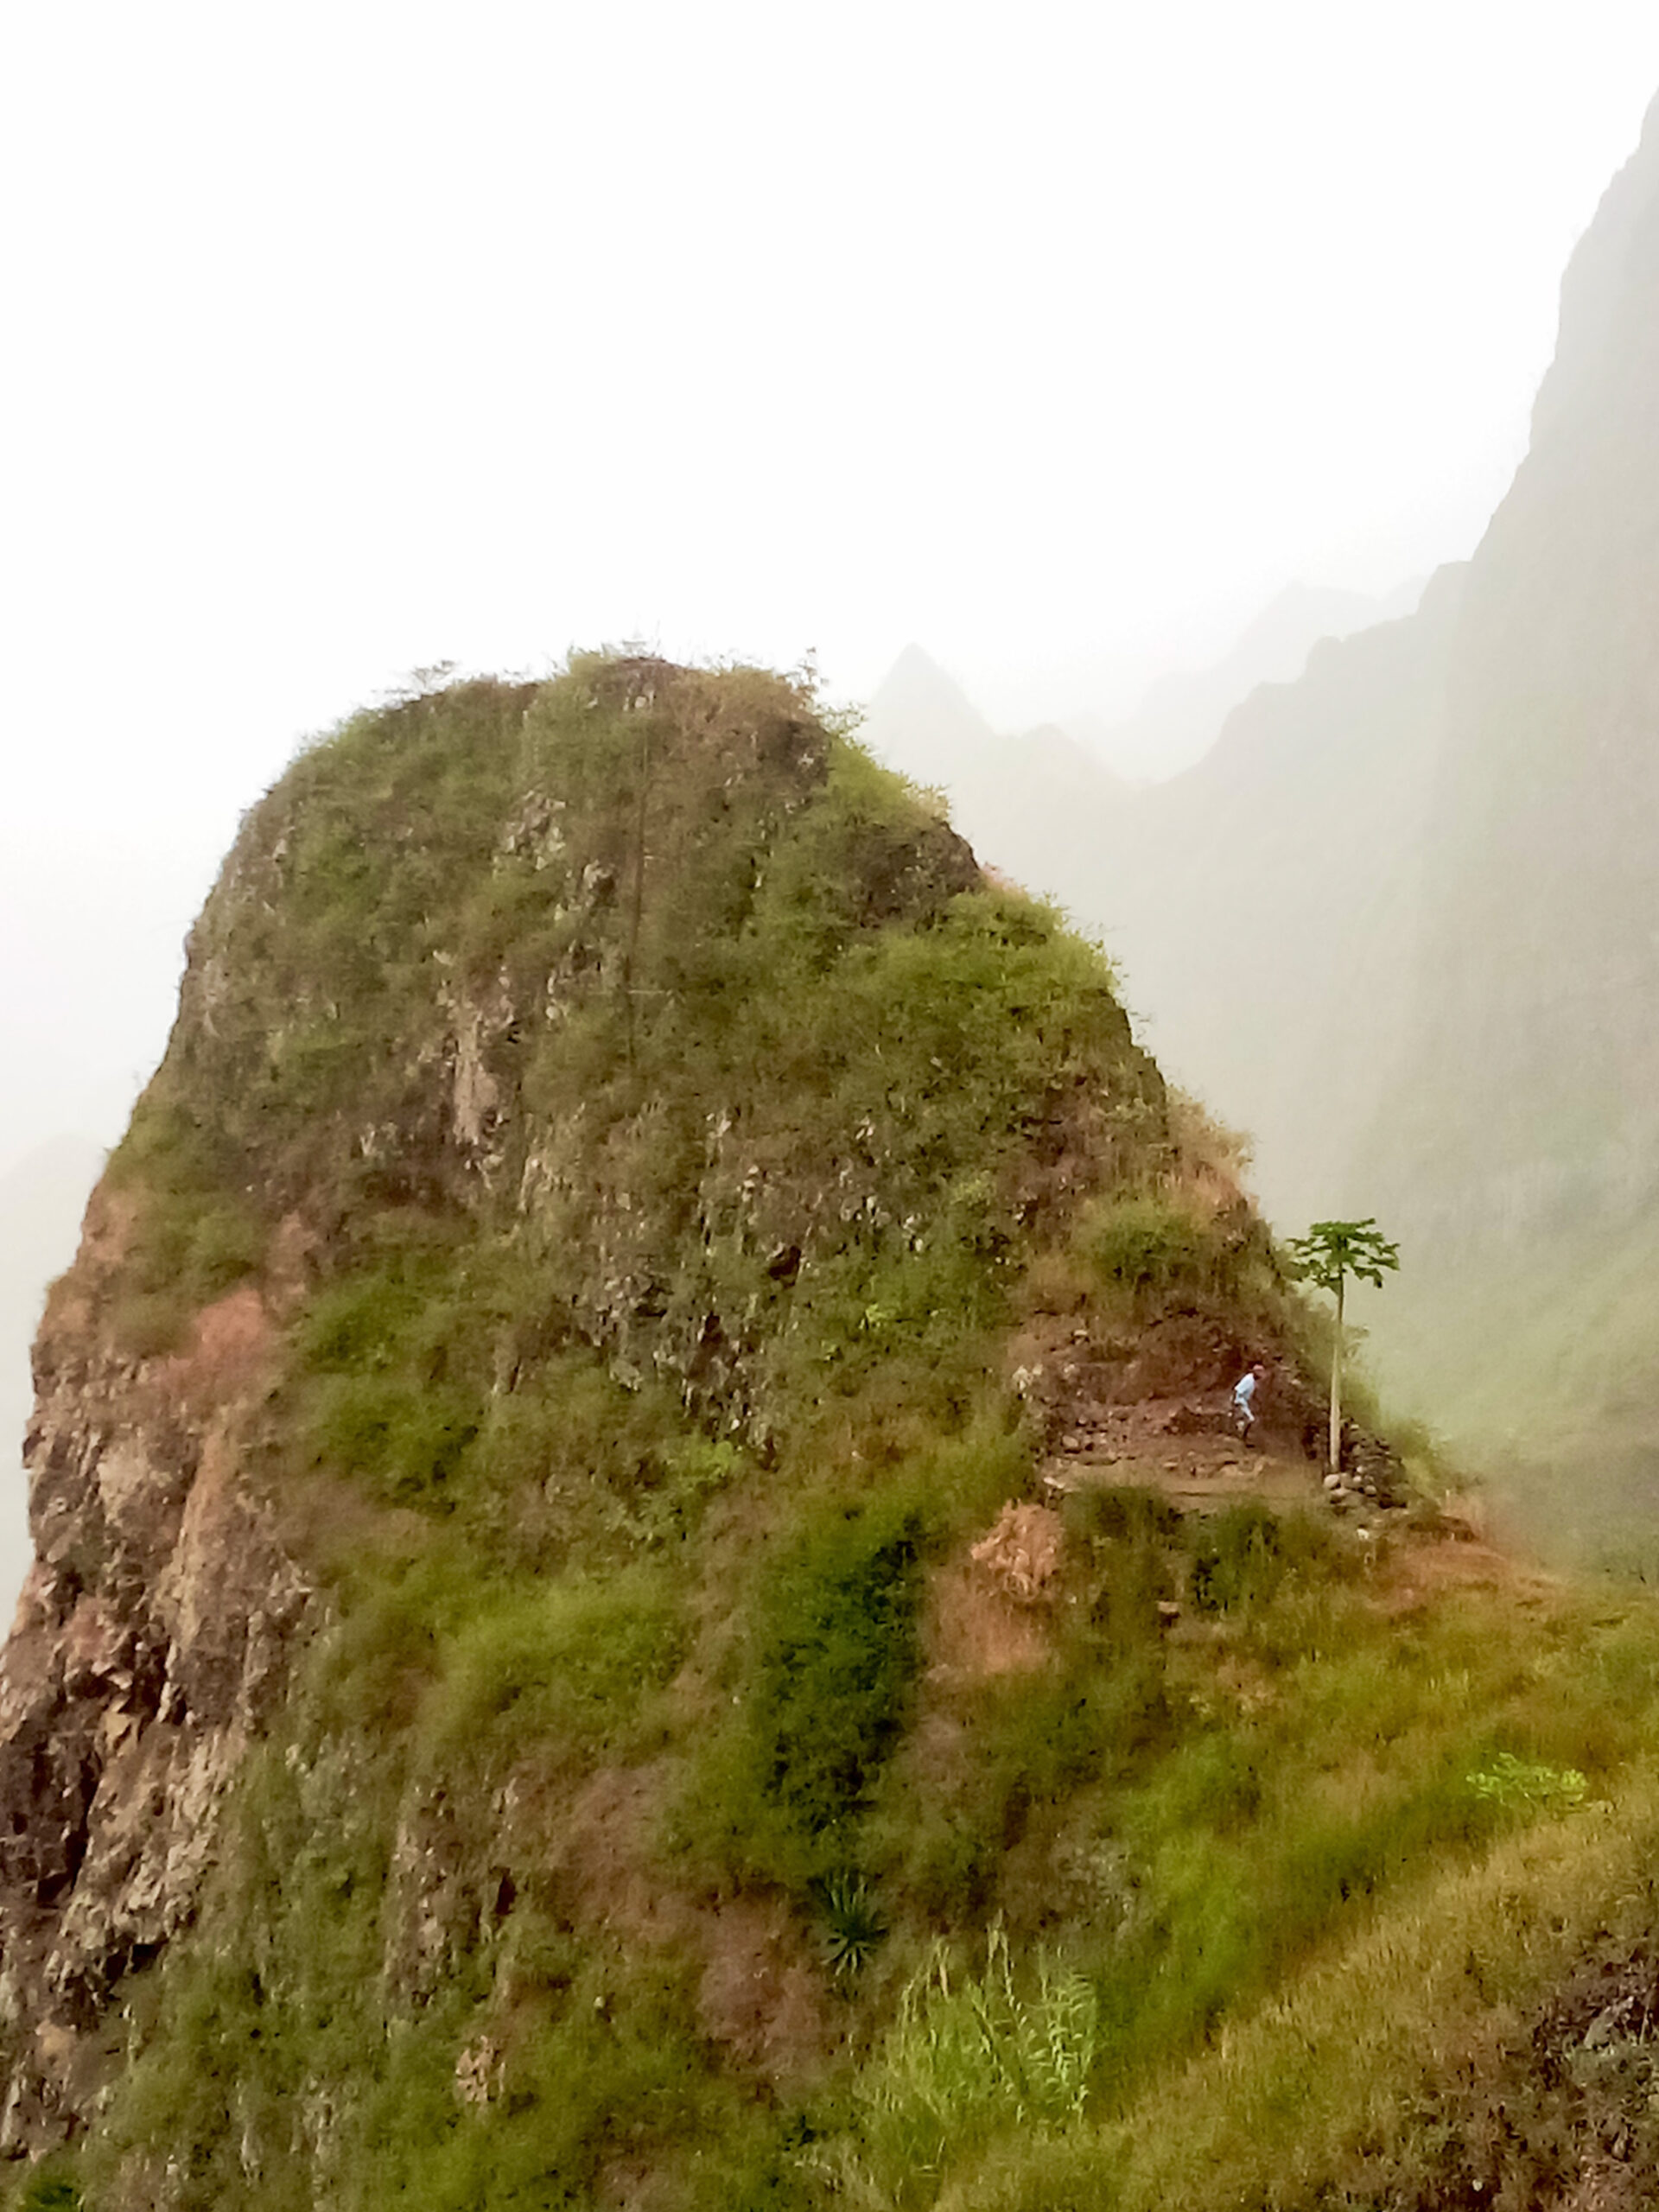 À Santo Antão au Cap-Vert, où cultiver est une forme d’alpinisme, les chasseurs de nuages scrutent le ciel et les brouillards qui s’accrochent aux sommets de cette île volcanique pour y trouver de l’eau de pluie qui ne tombe pas.